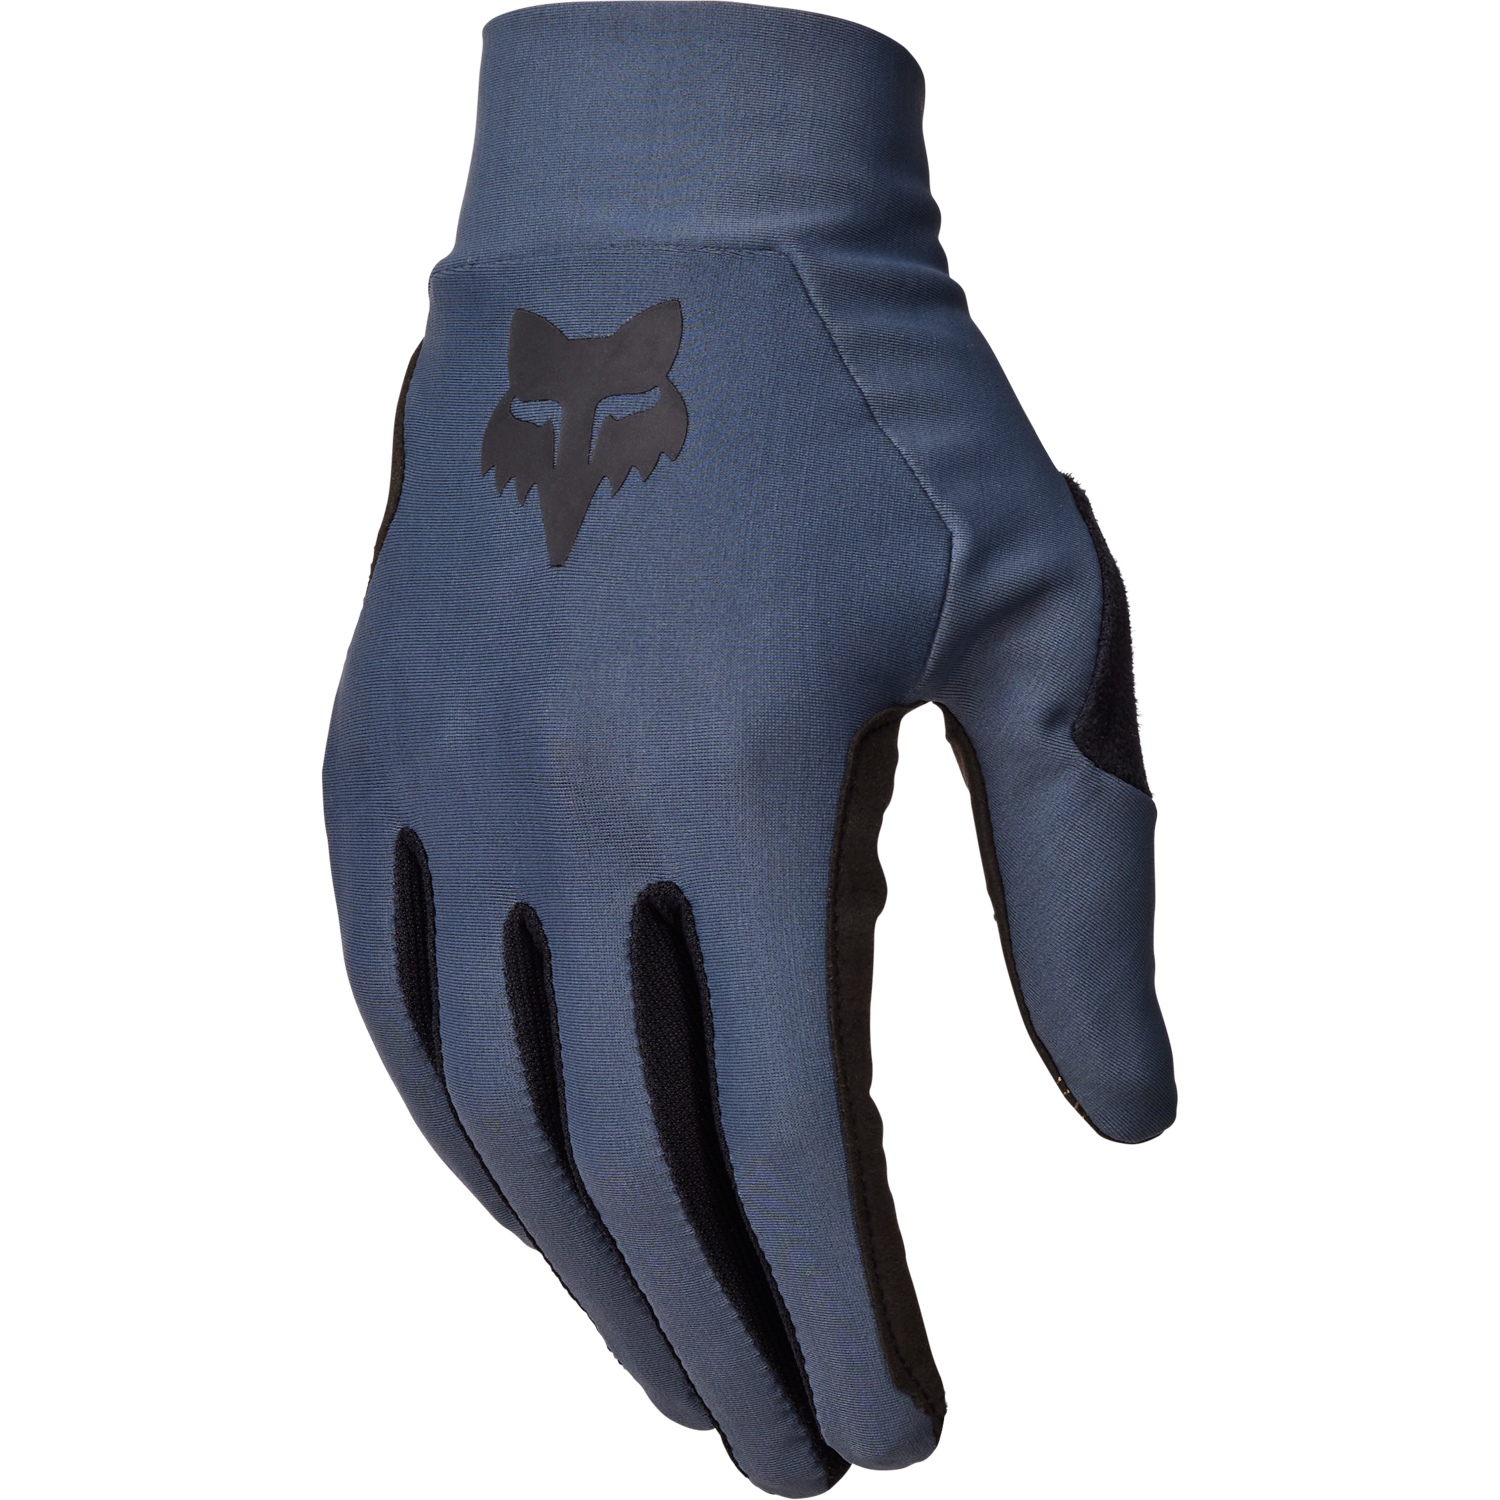 Produktbild von FOX Flexair MTB Vollfinger-Handschuhe Herren - graphite